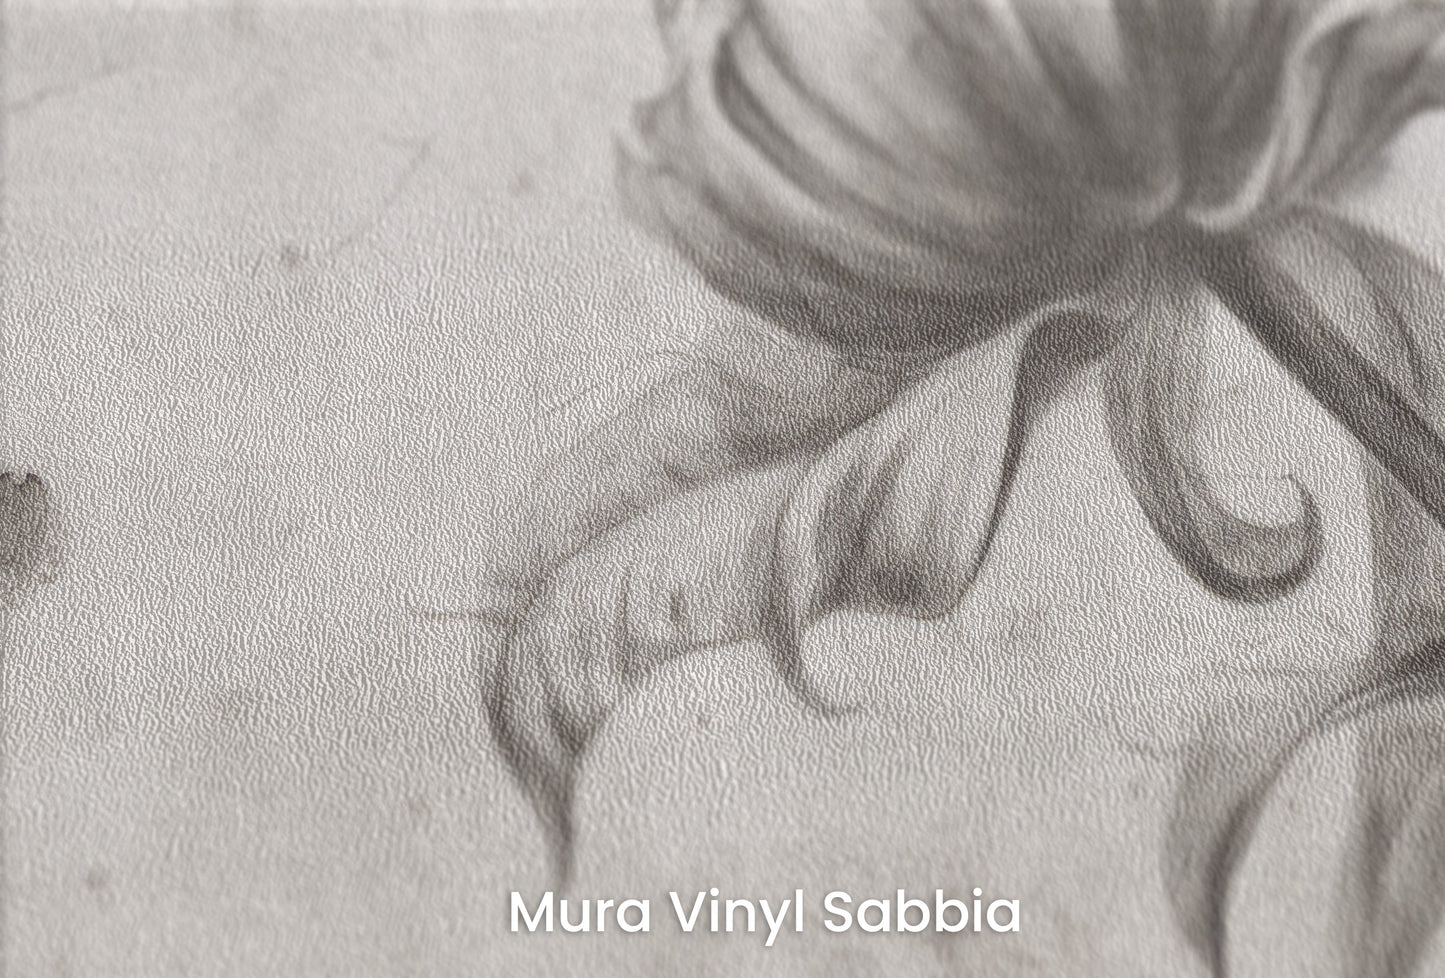 Zbliżenie na artystyczną fototapetę o nazwie GRACEFUL SOLITUDE na podłożu Mura Vinyl Sabbia struktura grubego ziarna piasku.